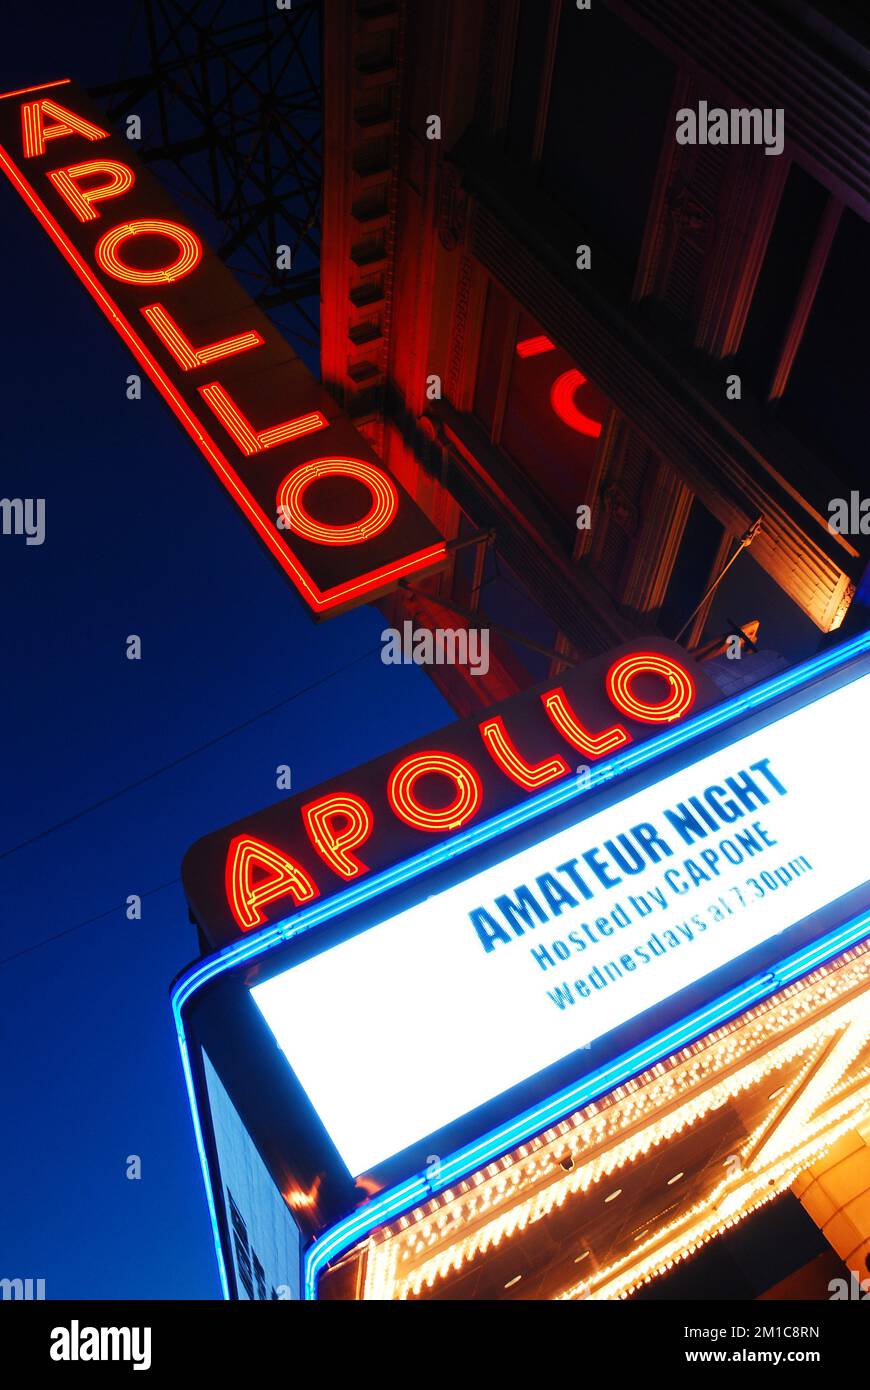 L'Apollo Theatre de Harlem, New York, accueille une soirée amateur tous les mercredis soirs, comme le montre le chapiteau au crépuscule Banque D'Images